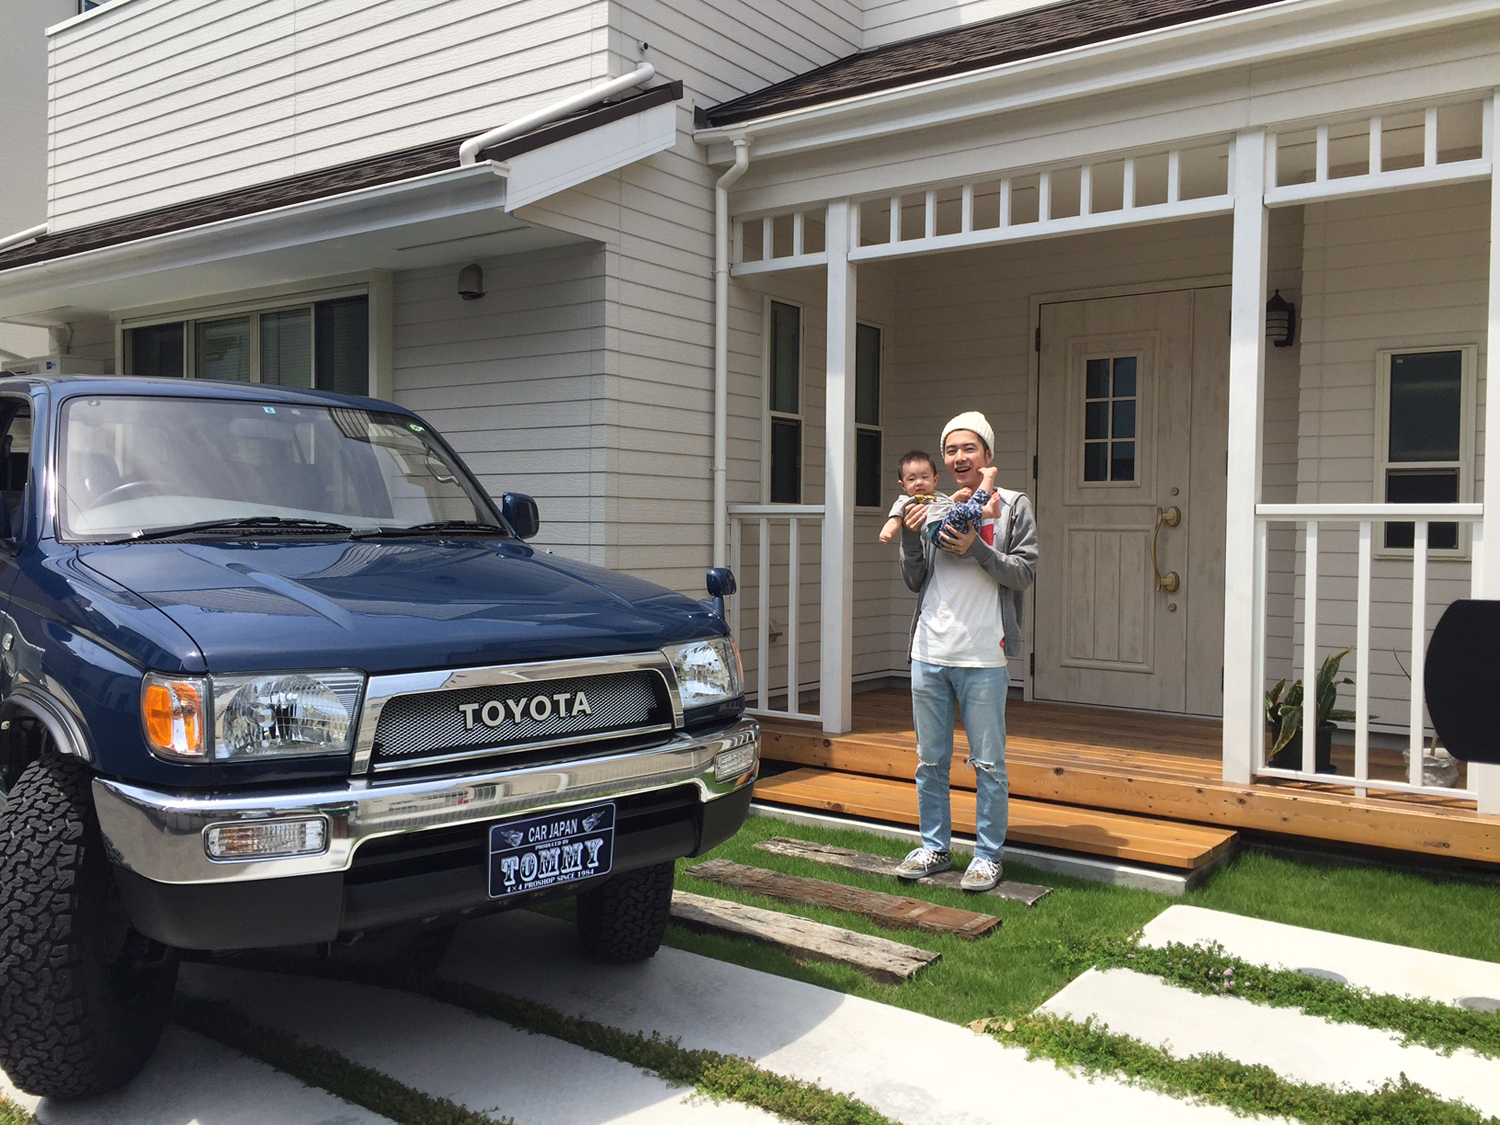 横須賀にアーリーアメリカンな家を建て この家の外観に似合う車が欲しいと思っていました